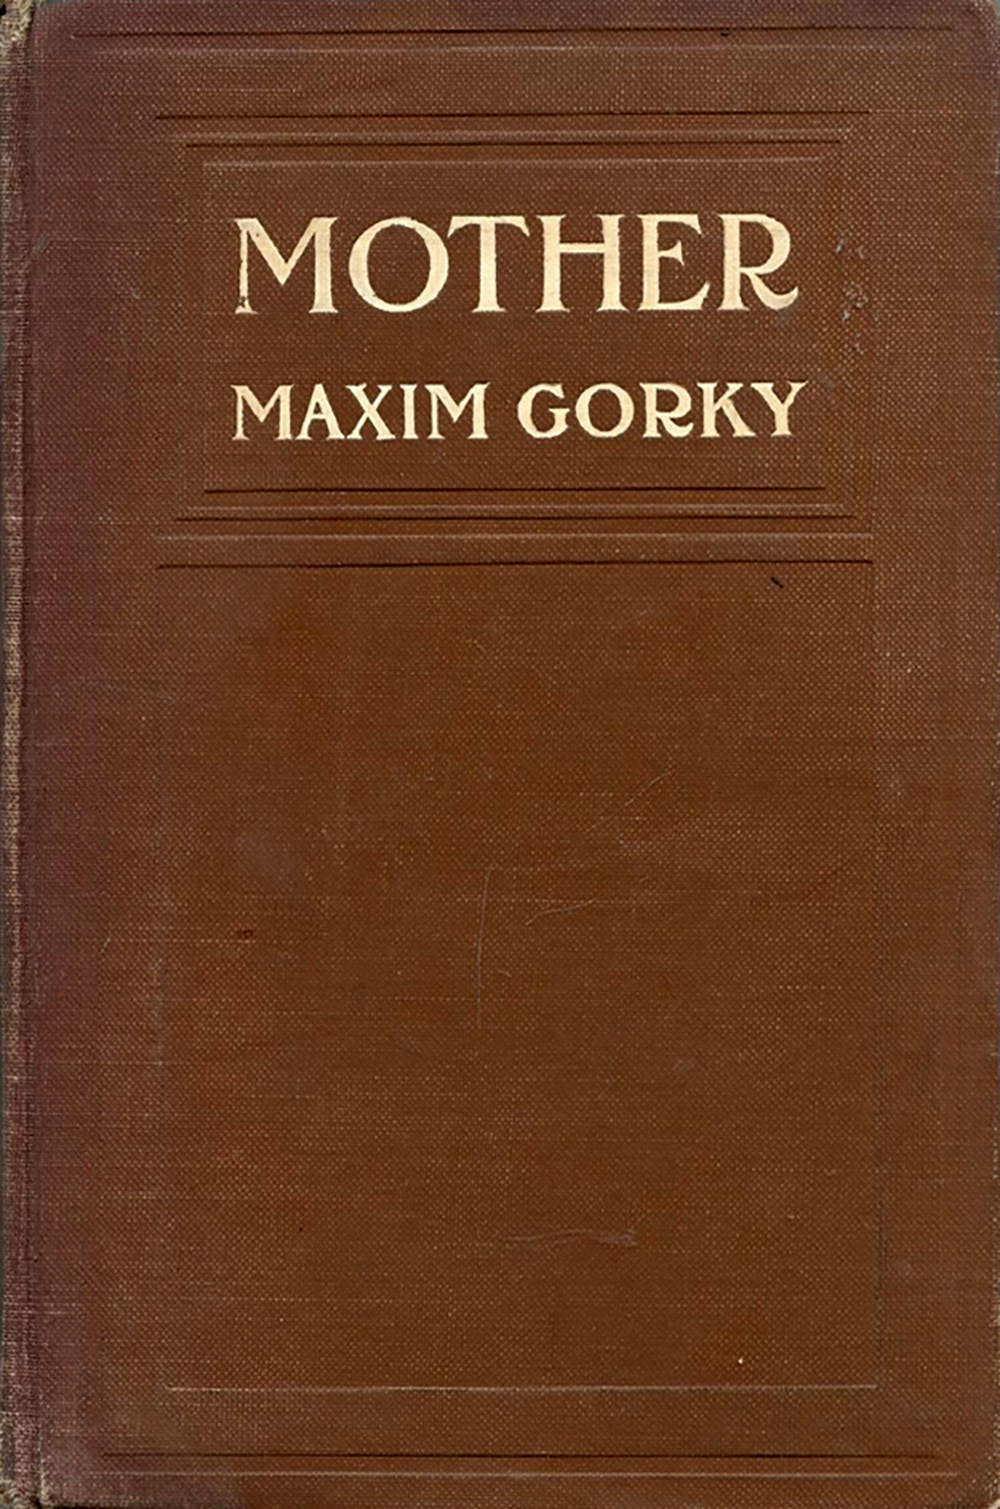 Евангелие от Максима: «Мать» Горького была написана как житие русских большевиков